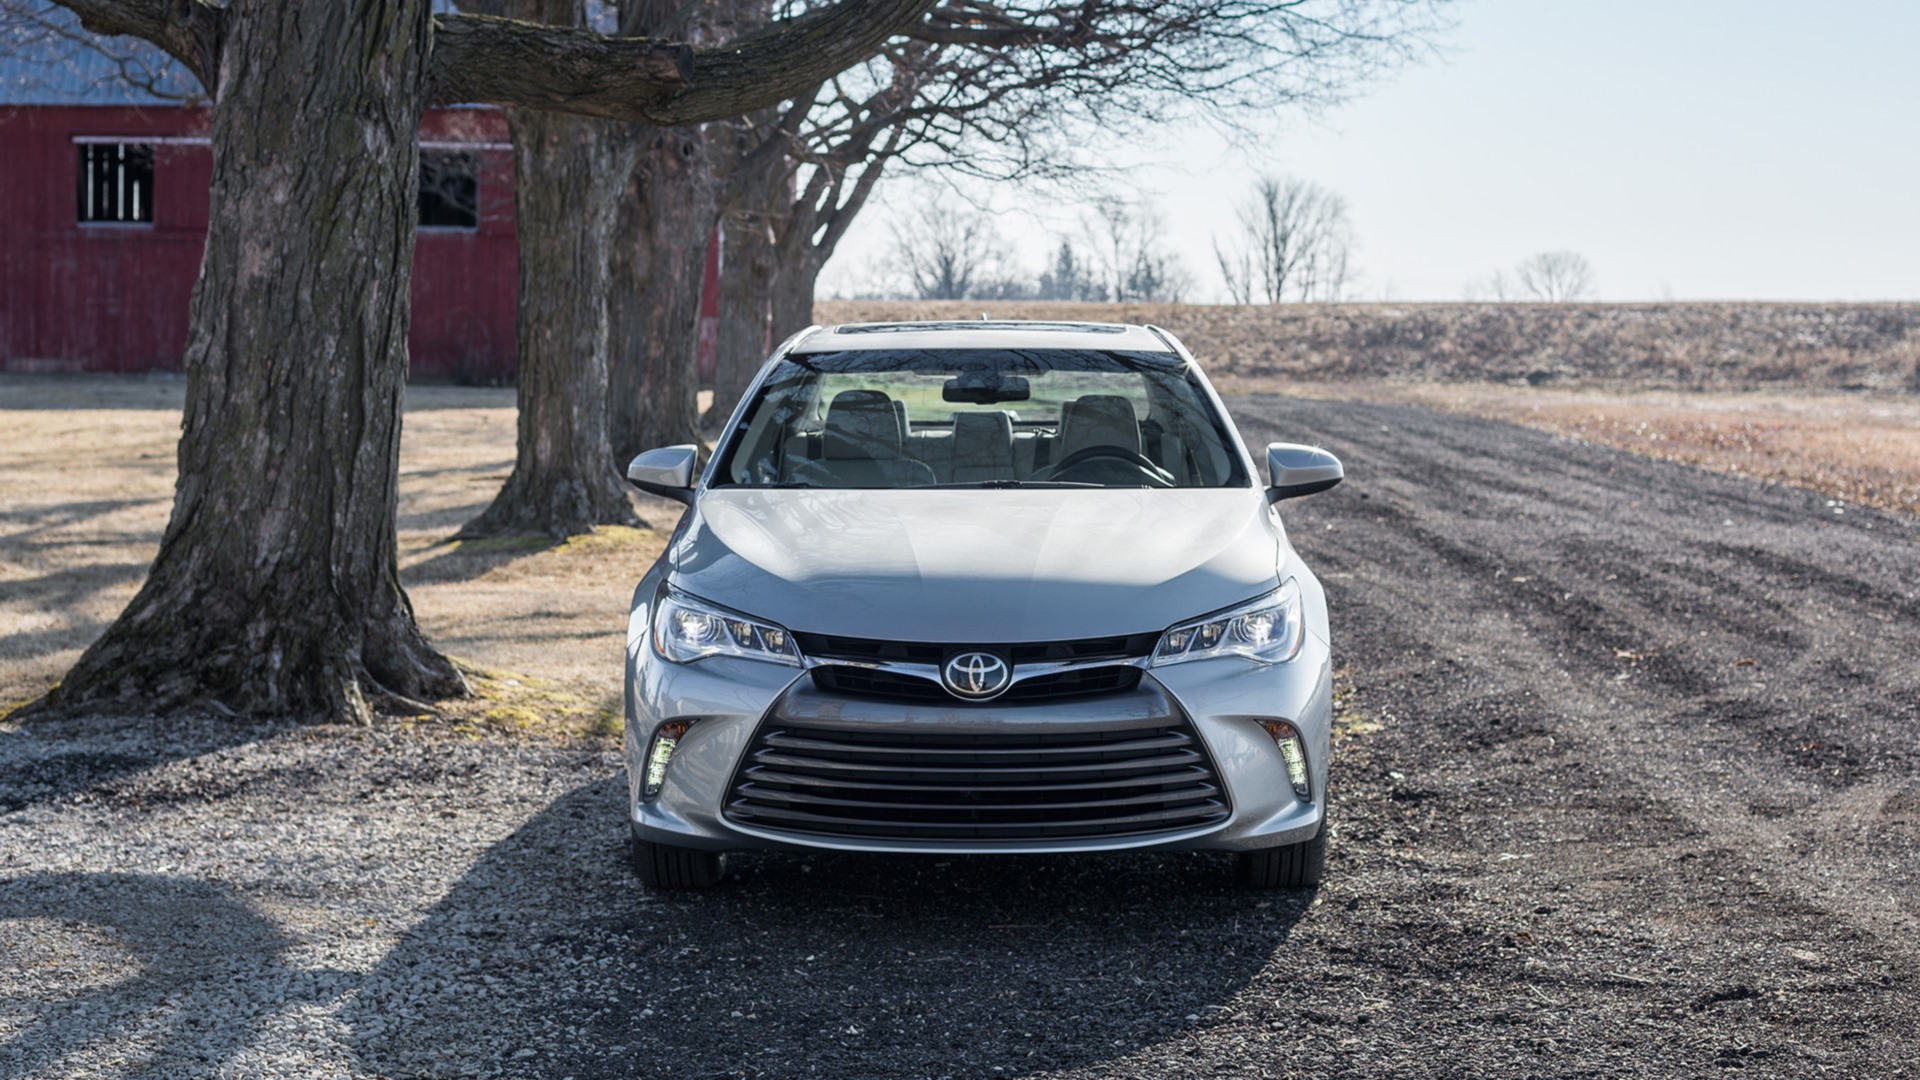 Meilleurs fonds d'écran Toyota Camry 2015 pour l'écran du téléphone